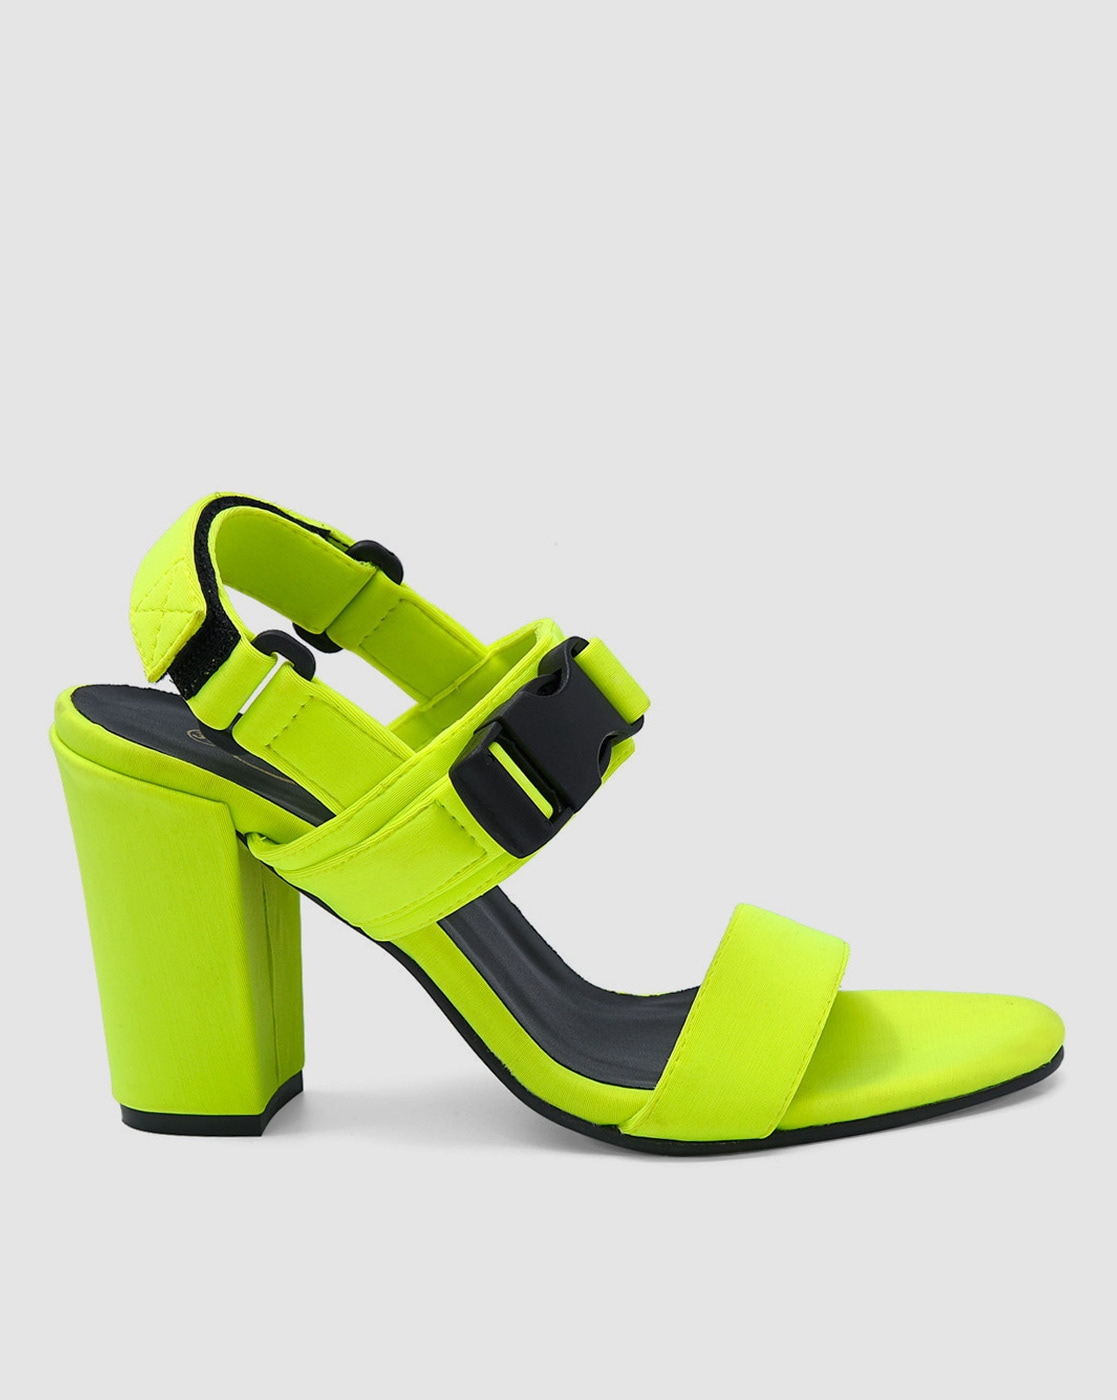 Pop-It Neon Round Block Heels | Aprajita Toor